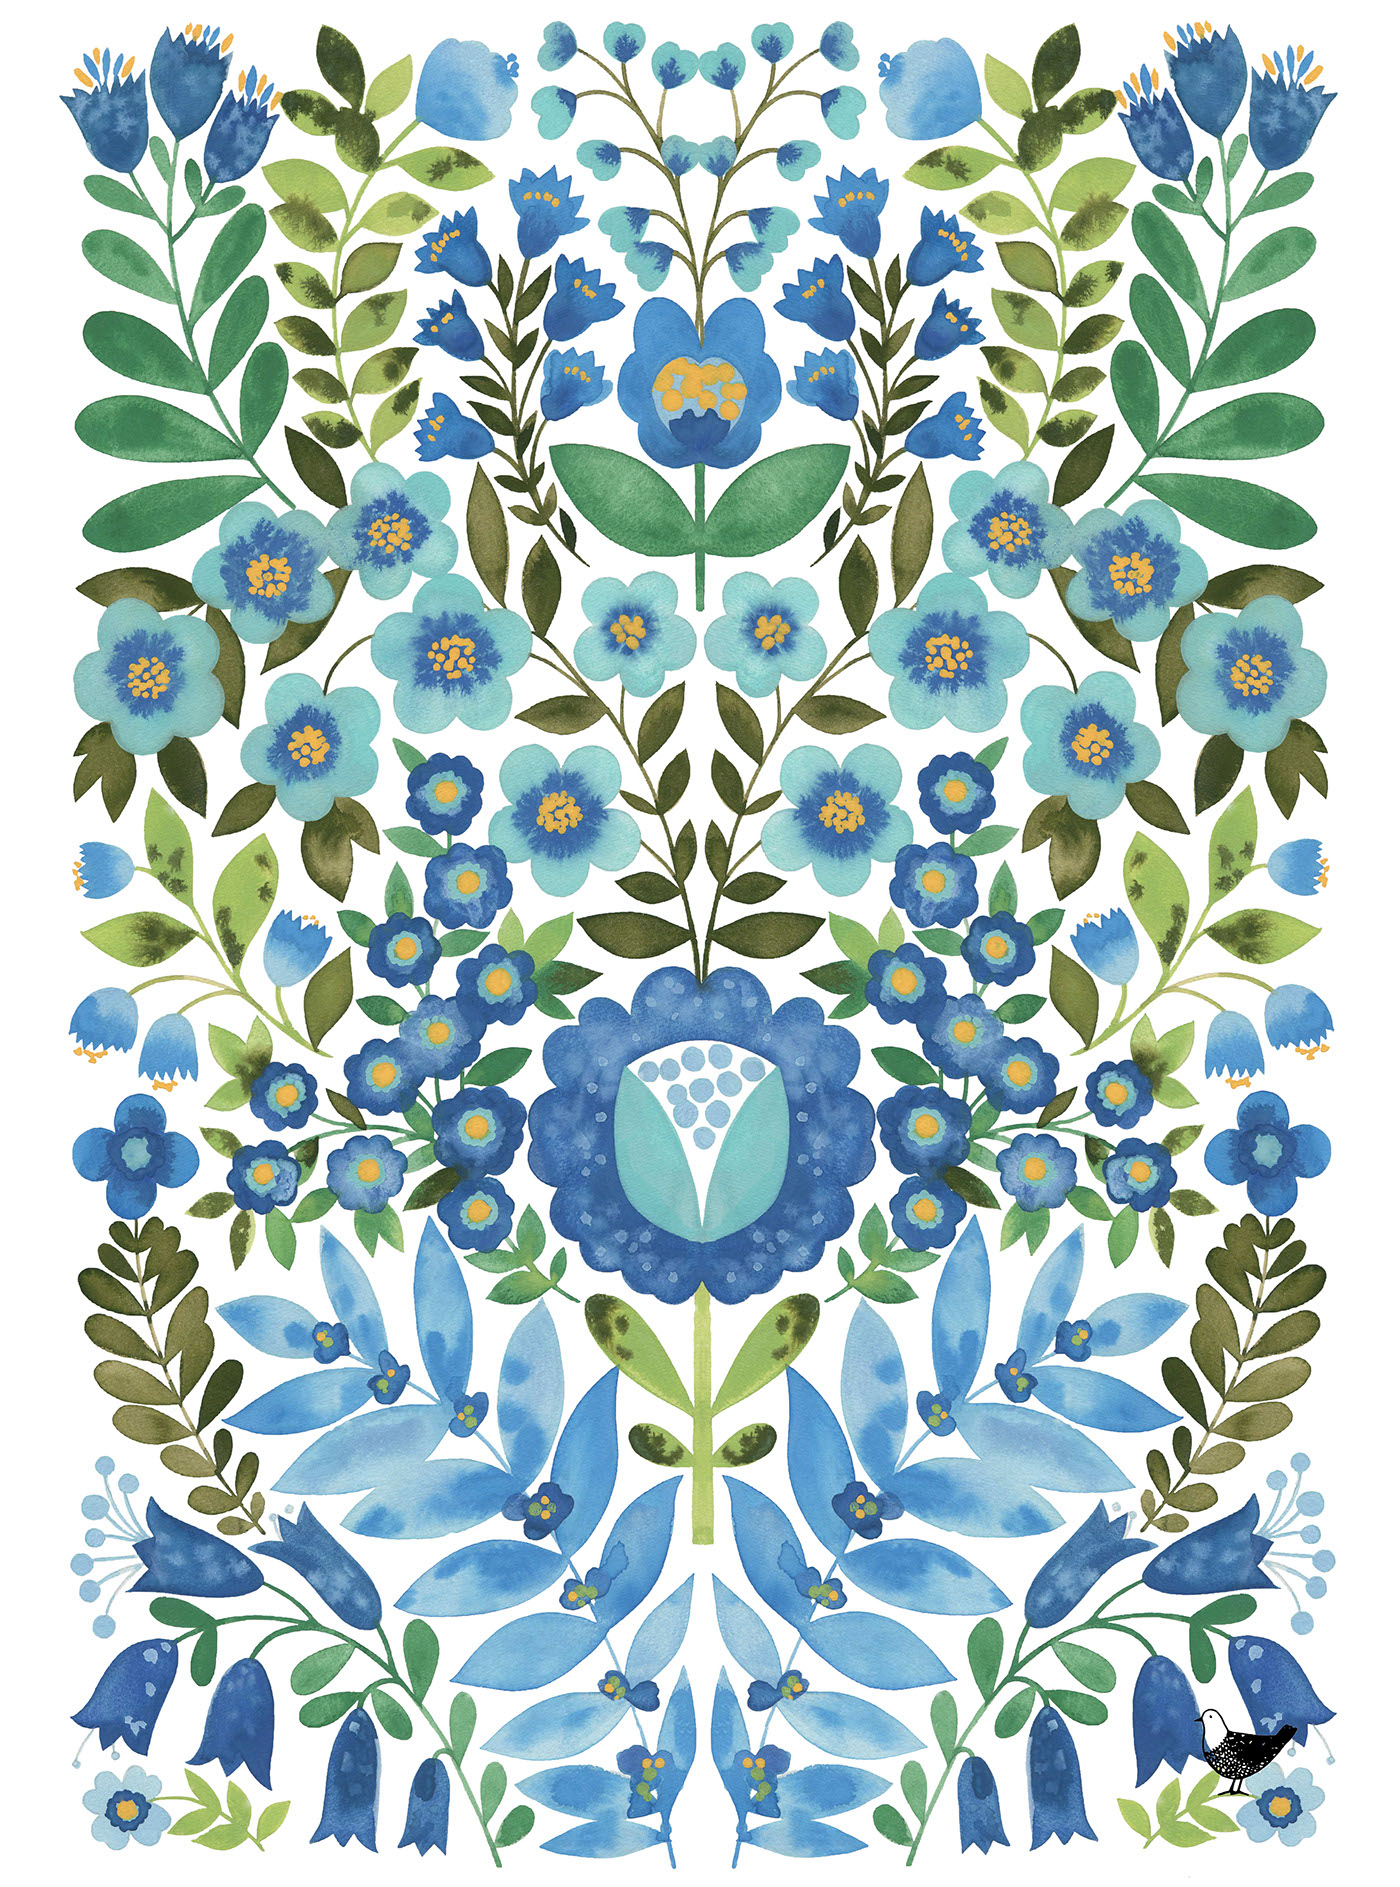 textile gouache folk floral pattern teatowel design hand painted design